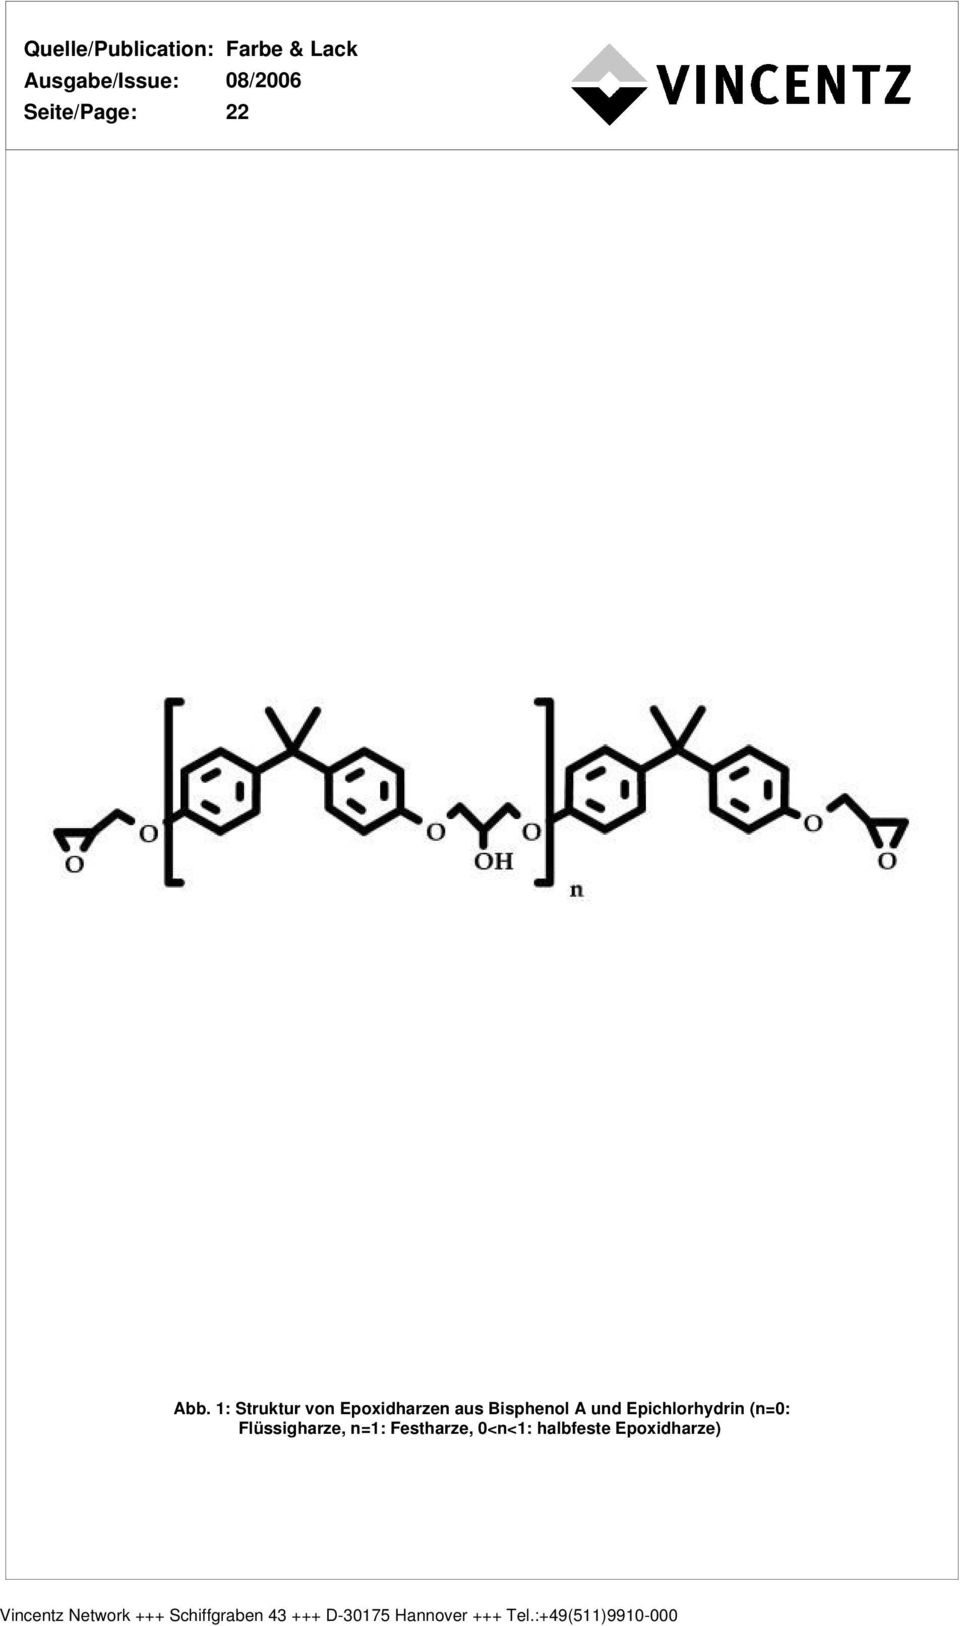 Epichlorhydrin (n=0: